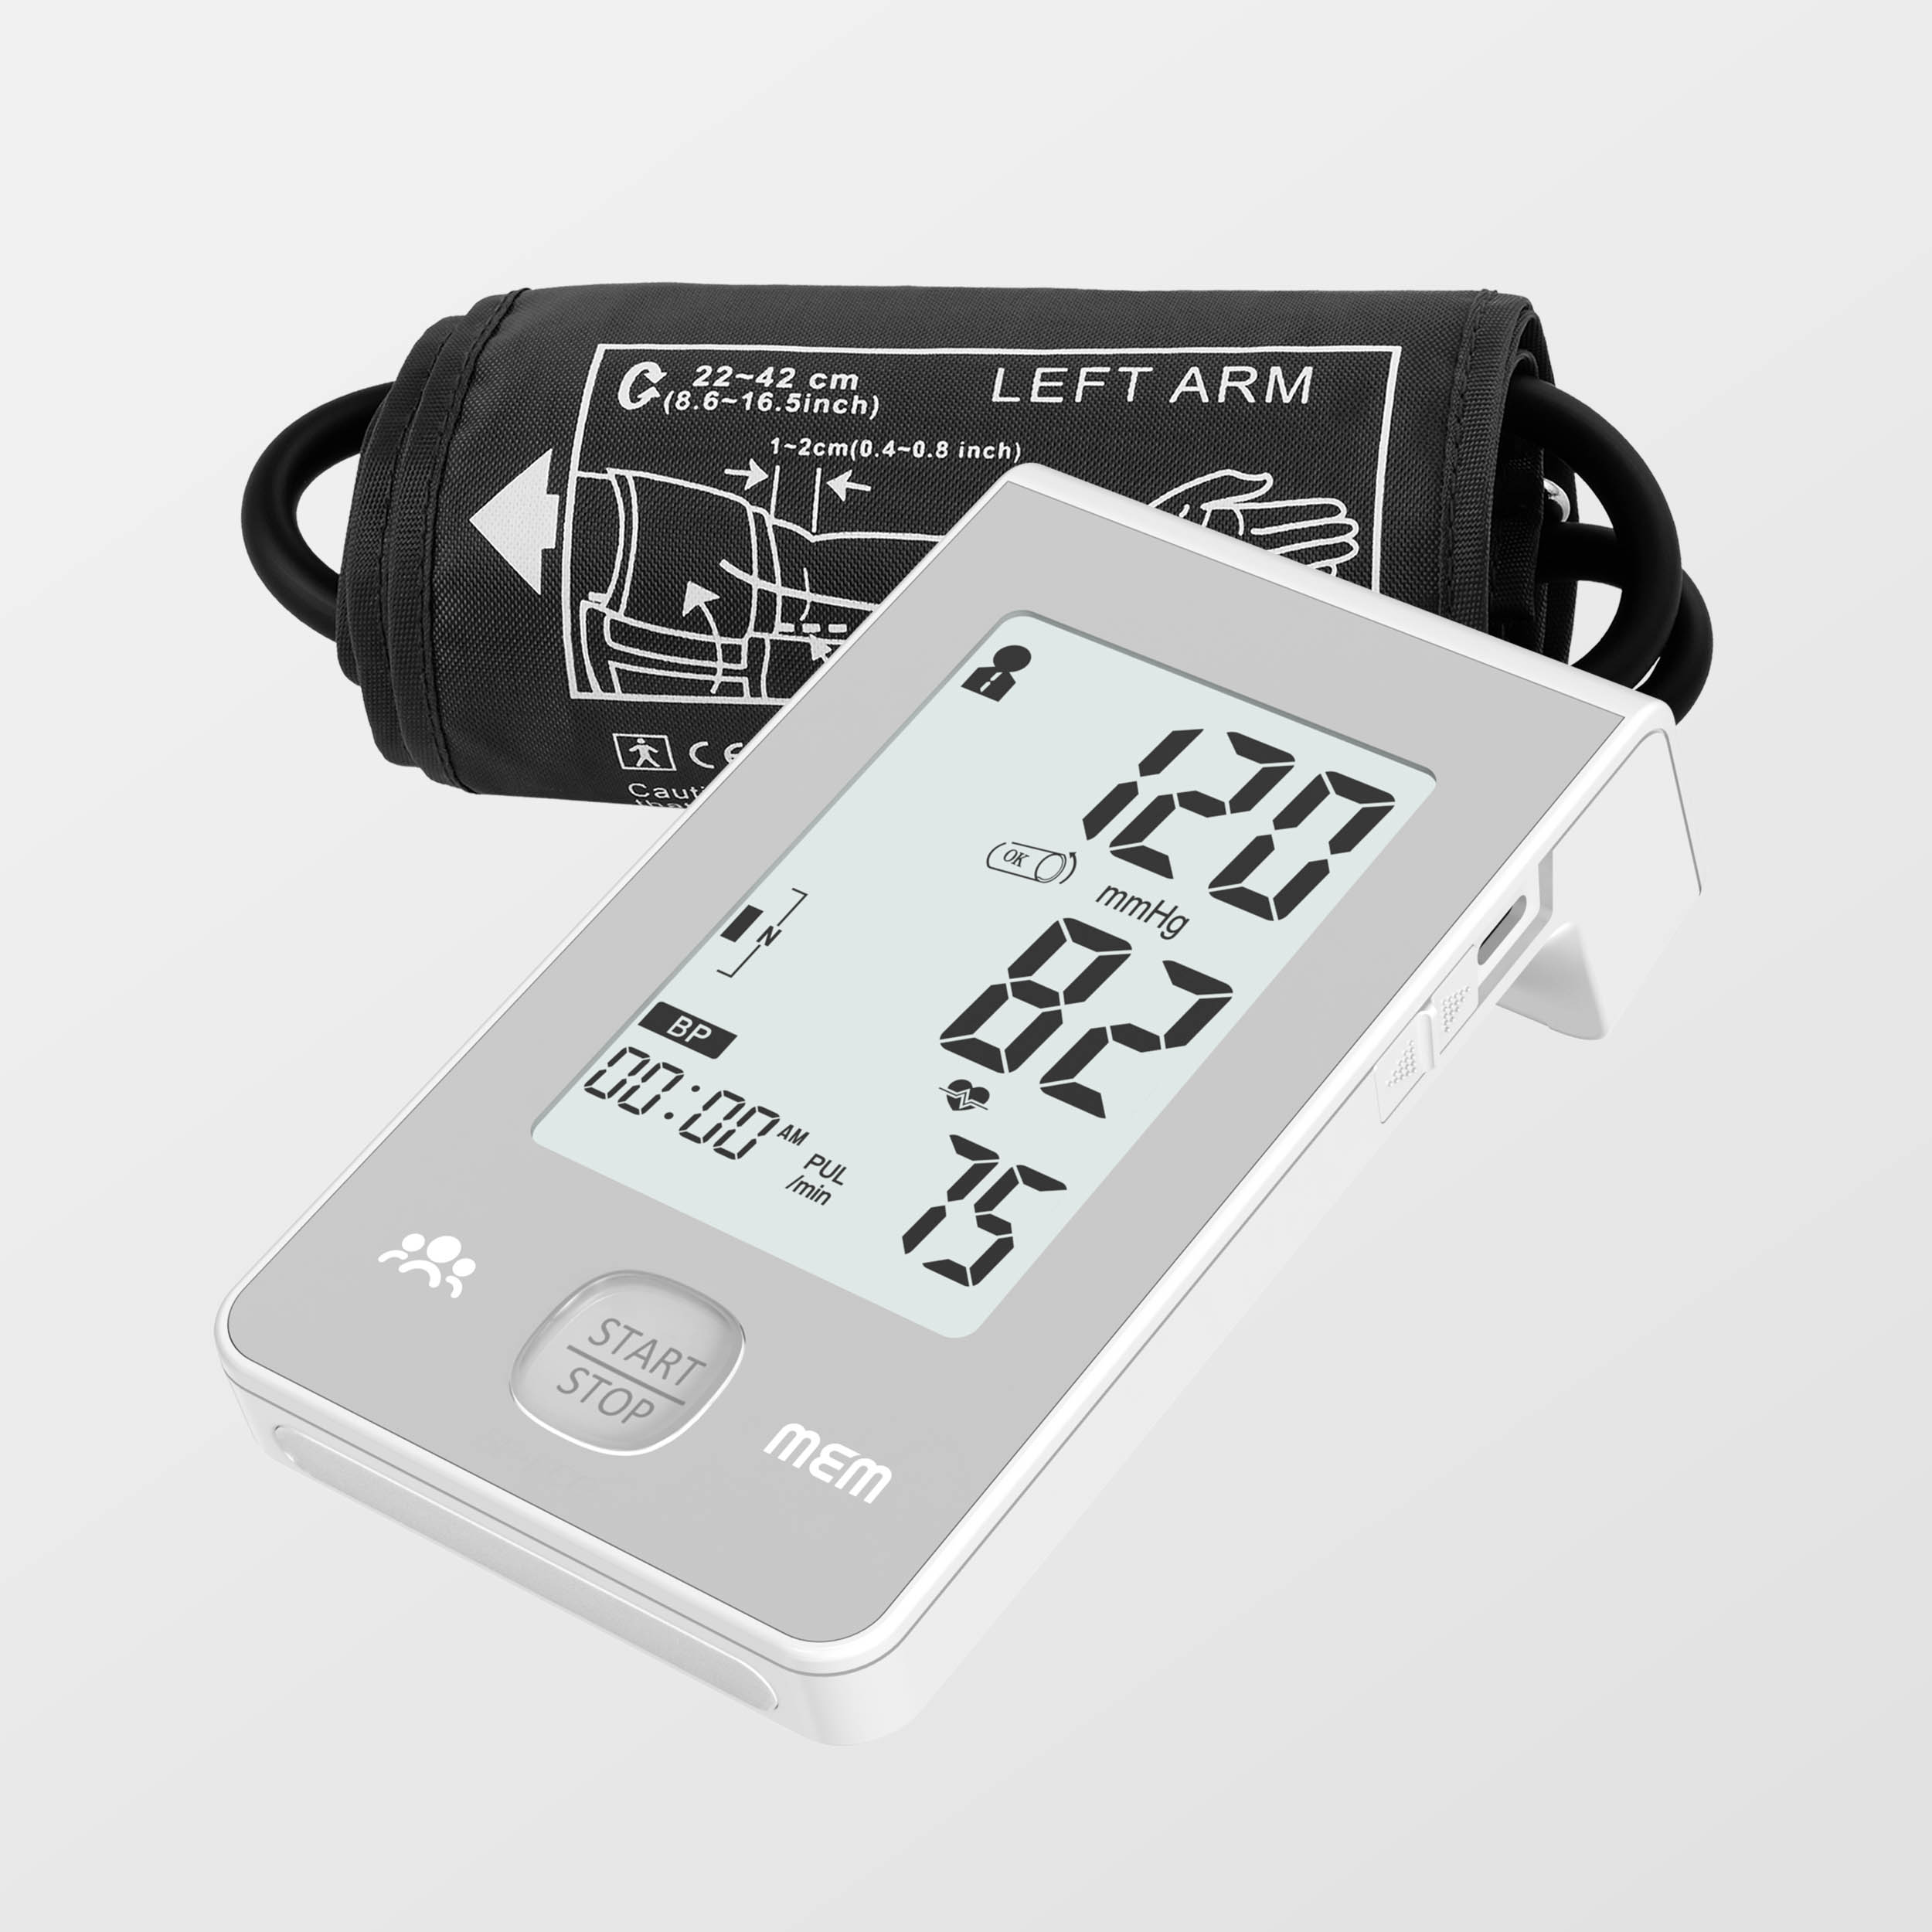 អេក្រង់ធំបន្ថែម Dual Power Supply Intelligent Blood Pressure Monitor ជាមួយ Ecg